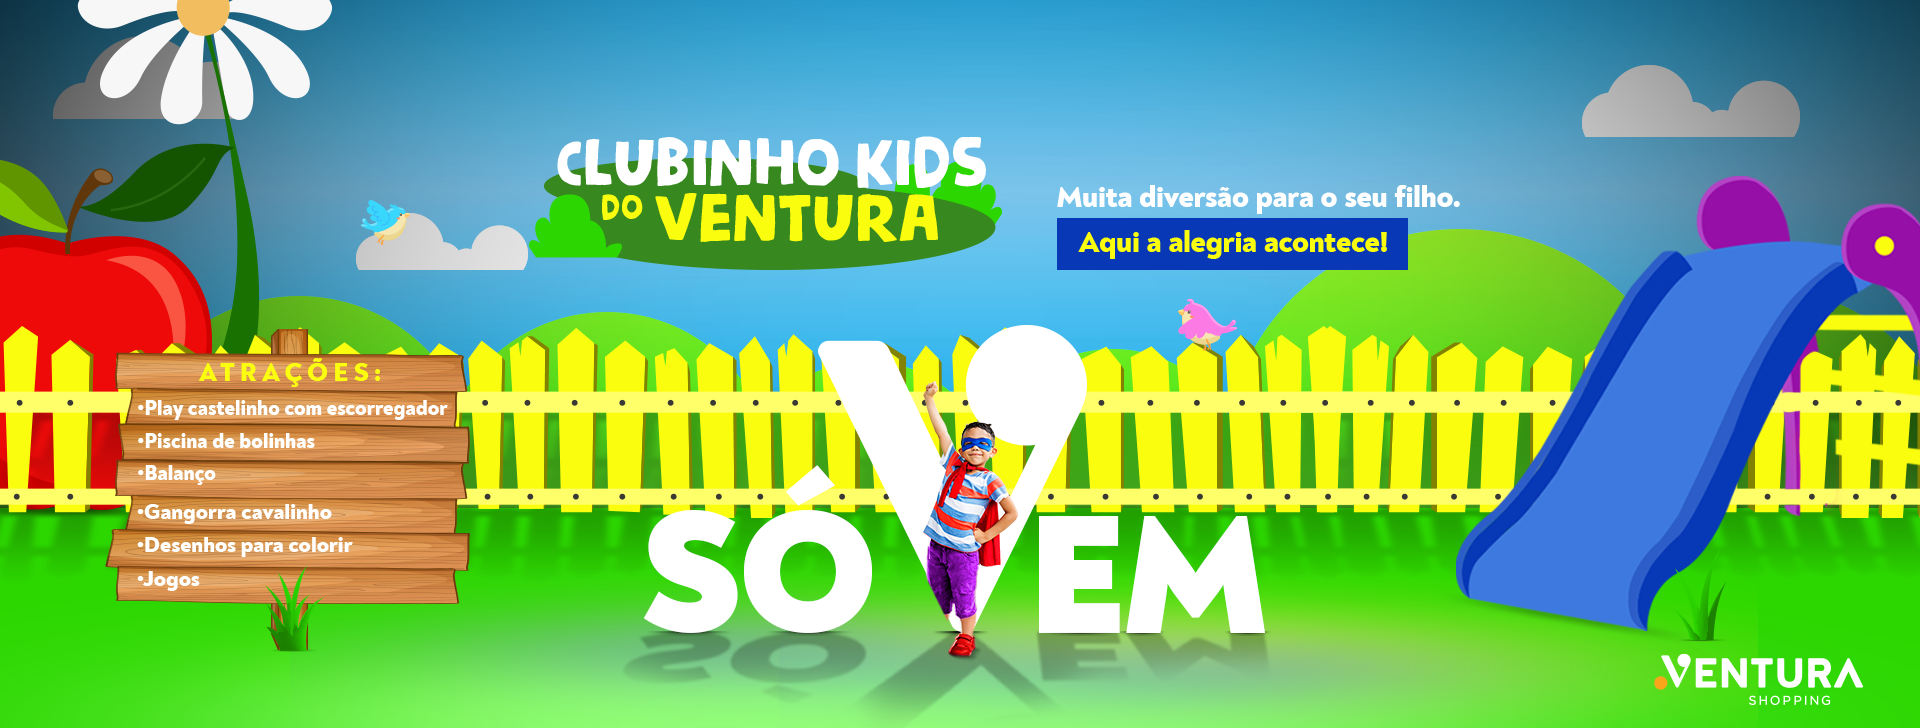 Imagem Clubinho Kids